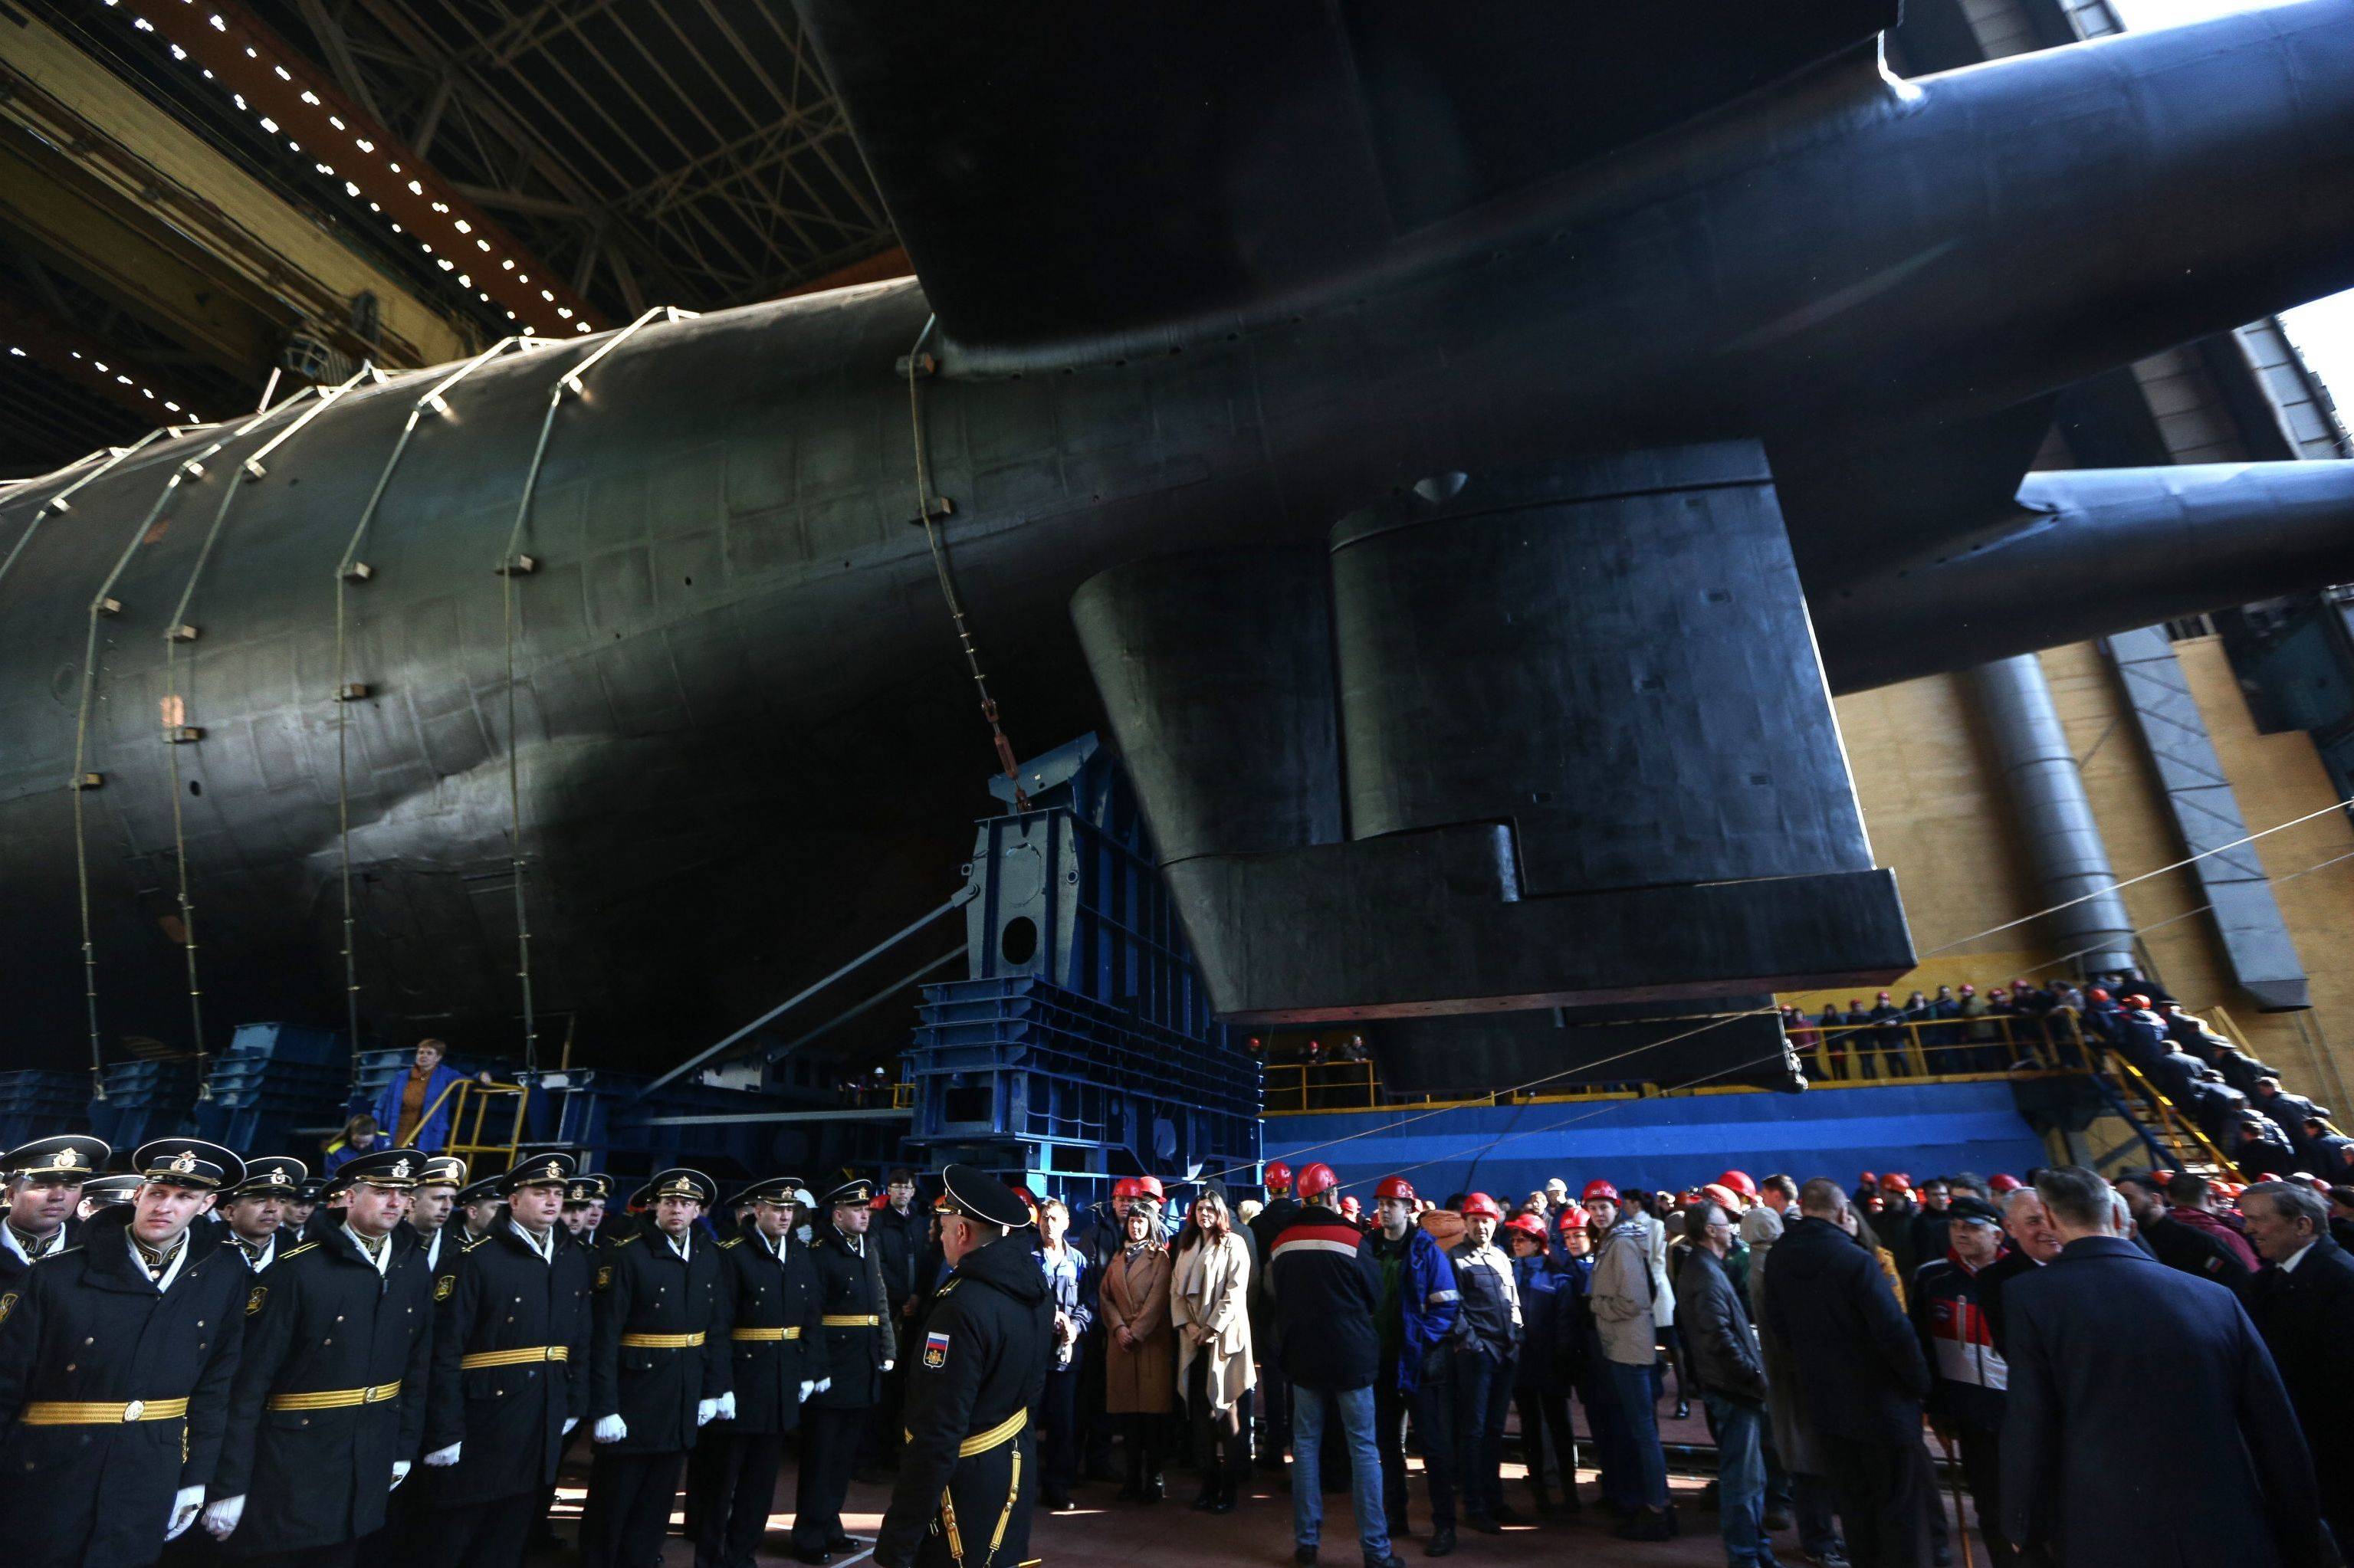 Пл ка. Подводная лодка Белгород Посейдон. Подводная лодка Белгород 09852. Подводная лодка к-329 Белгород. К-329 Белгород атомная подводная лодка.